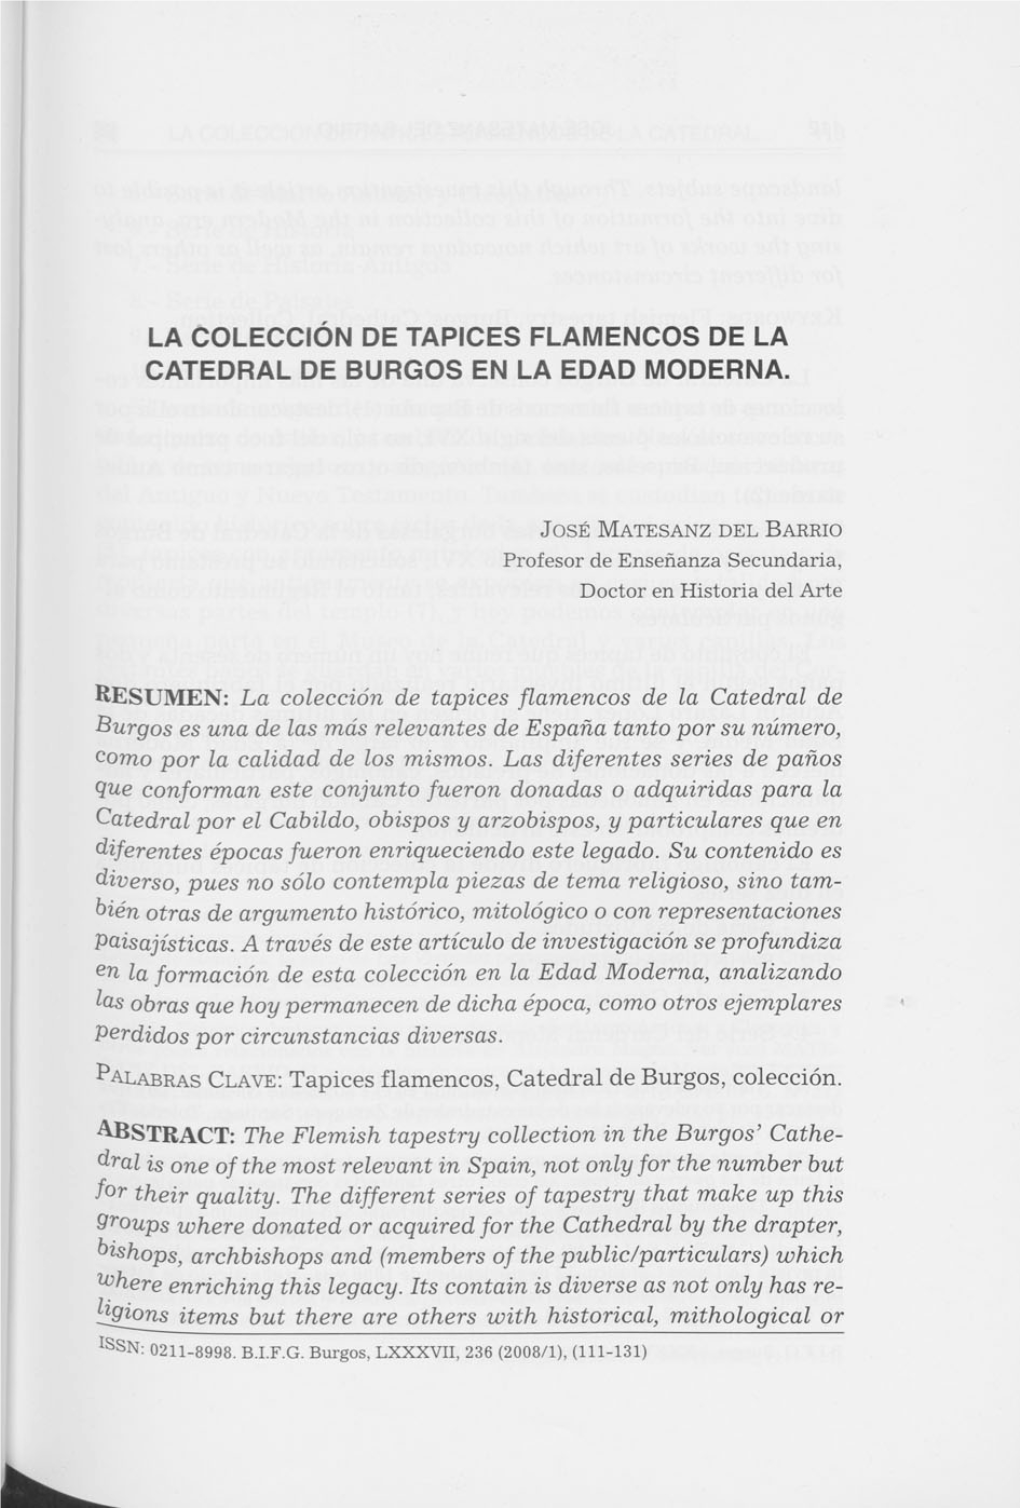 La Colección De Tapices Flamencos De La Catedral De Burgos En La Edad Moderna